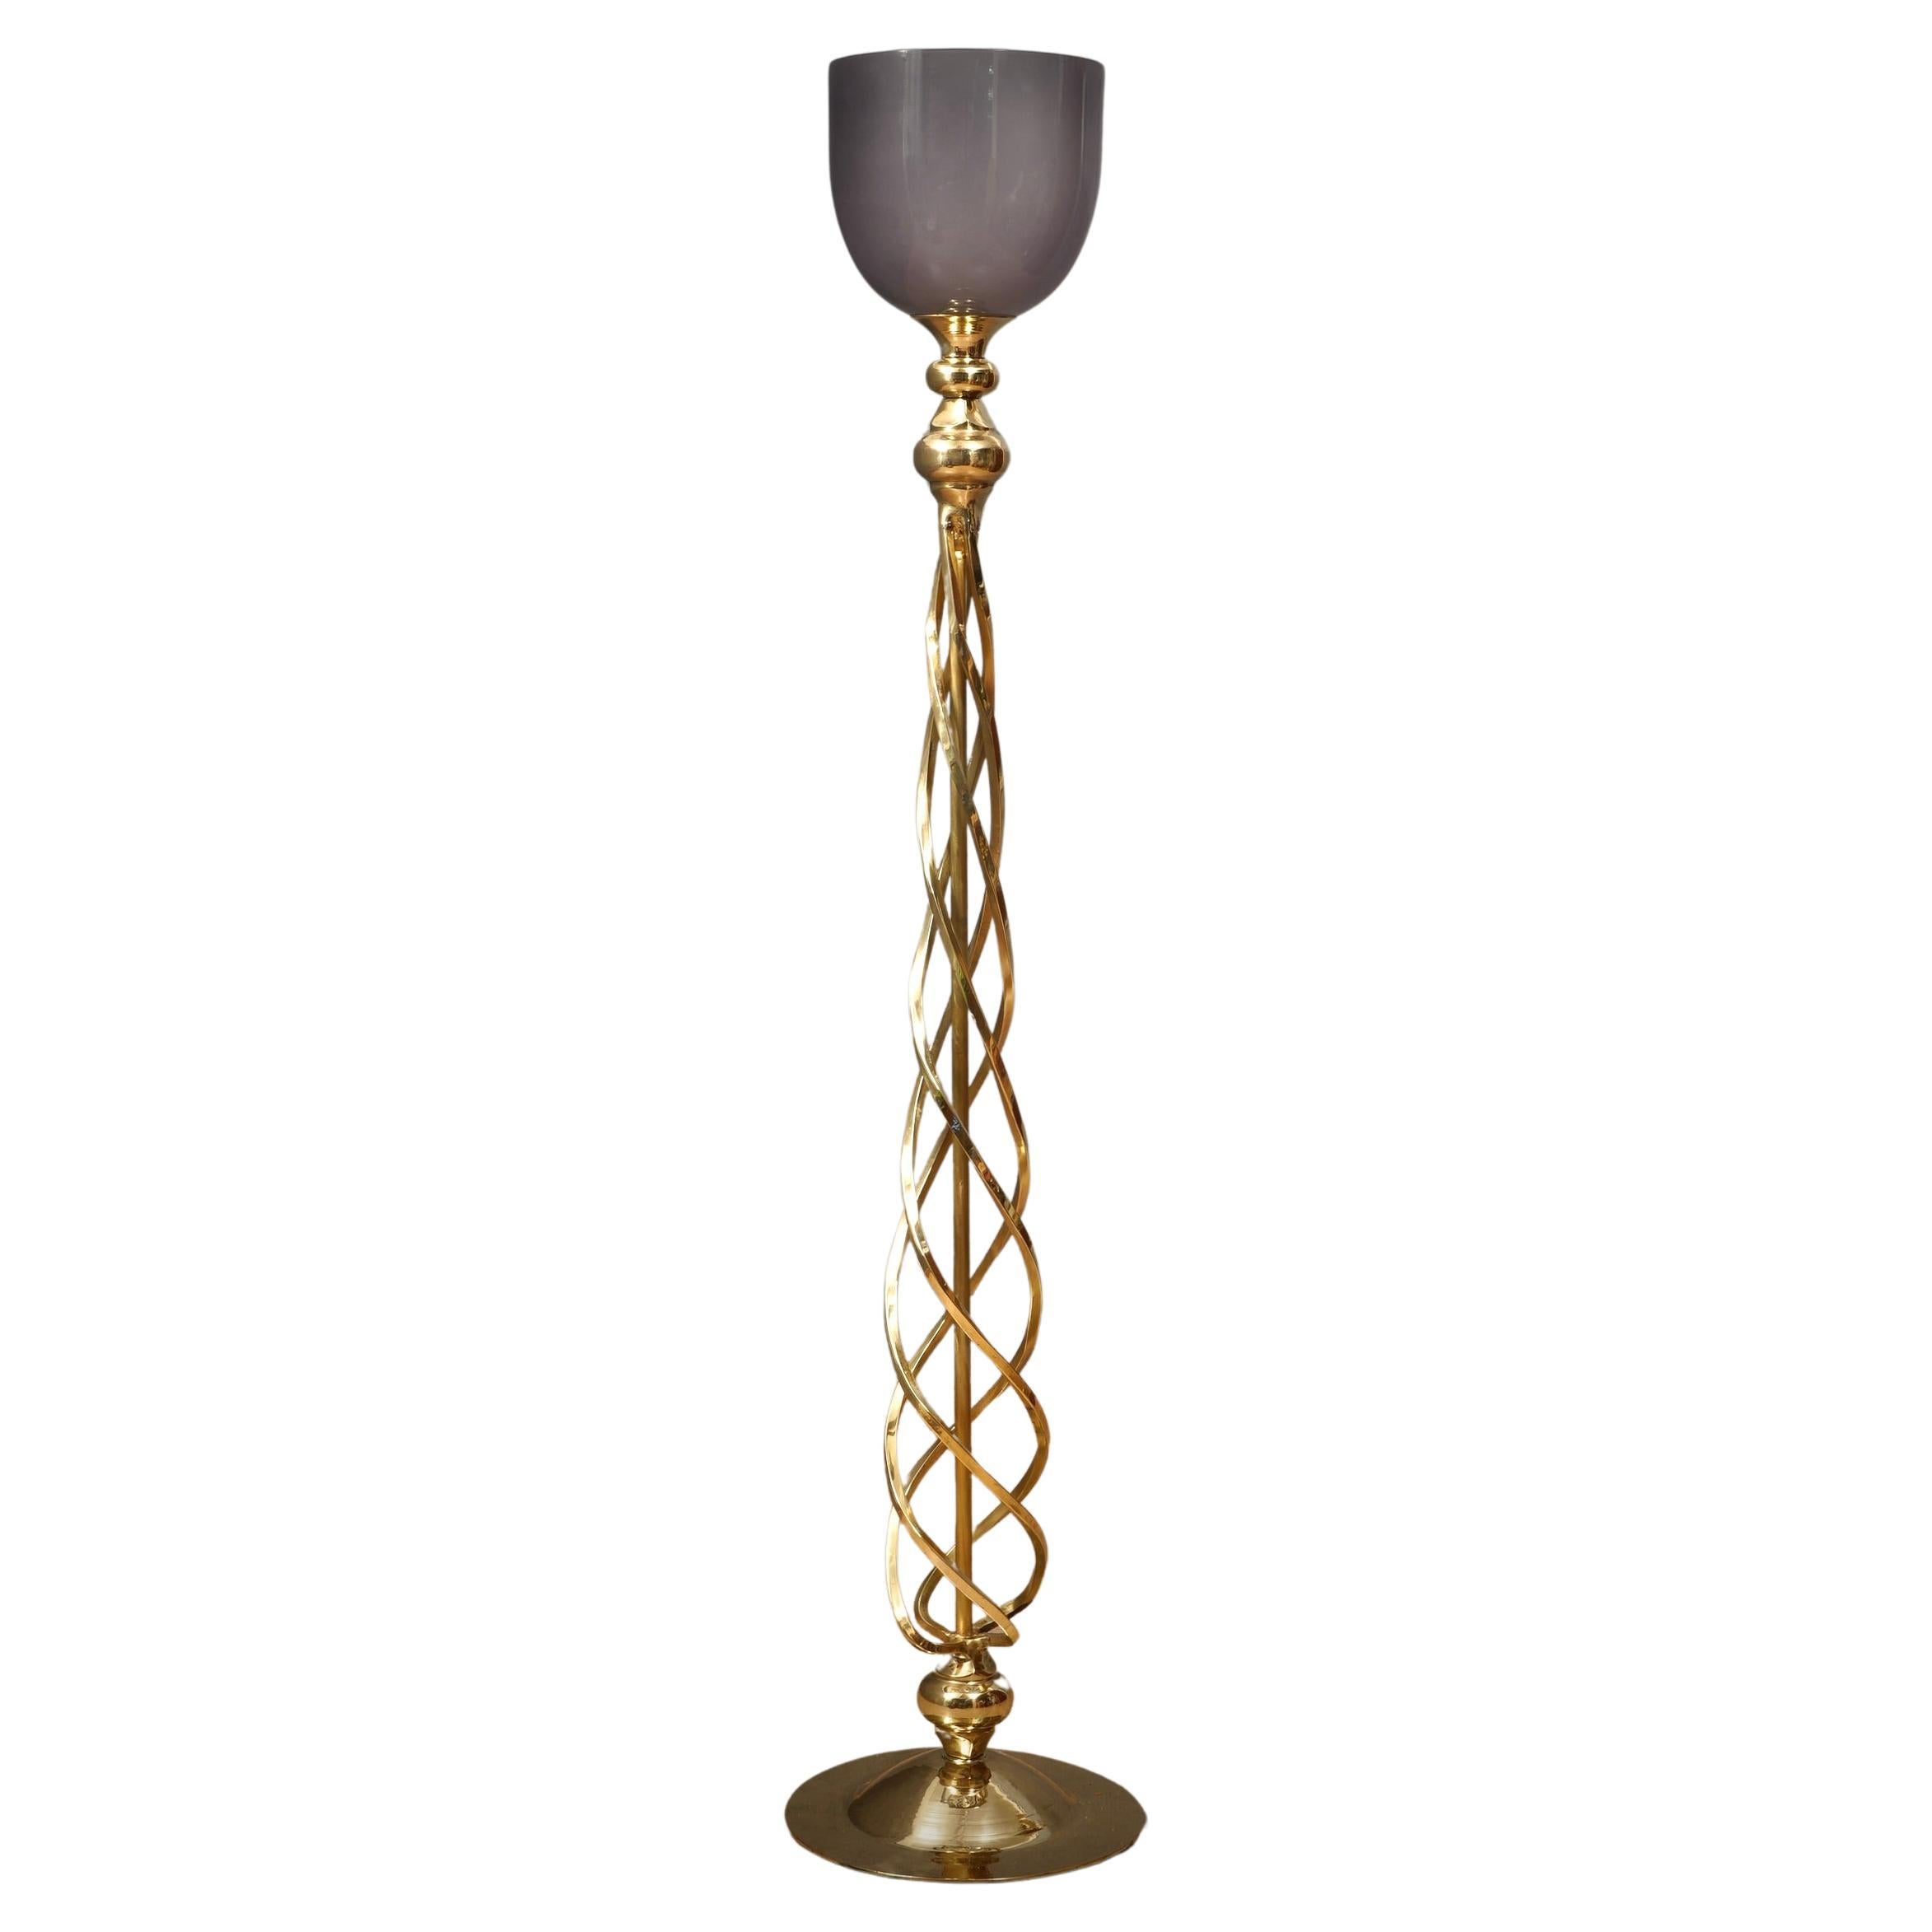 MidCentury Murano Glass and Brass Floor Lamp, 1970